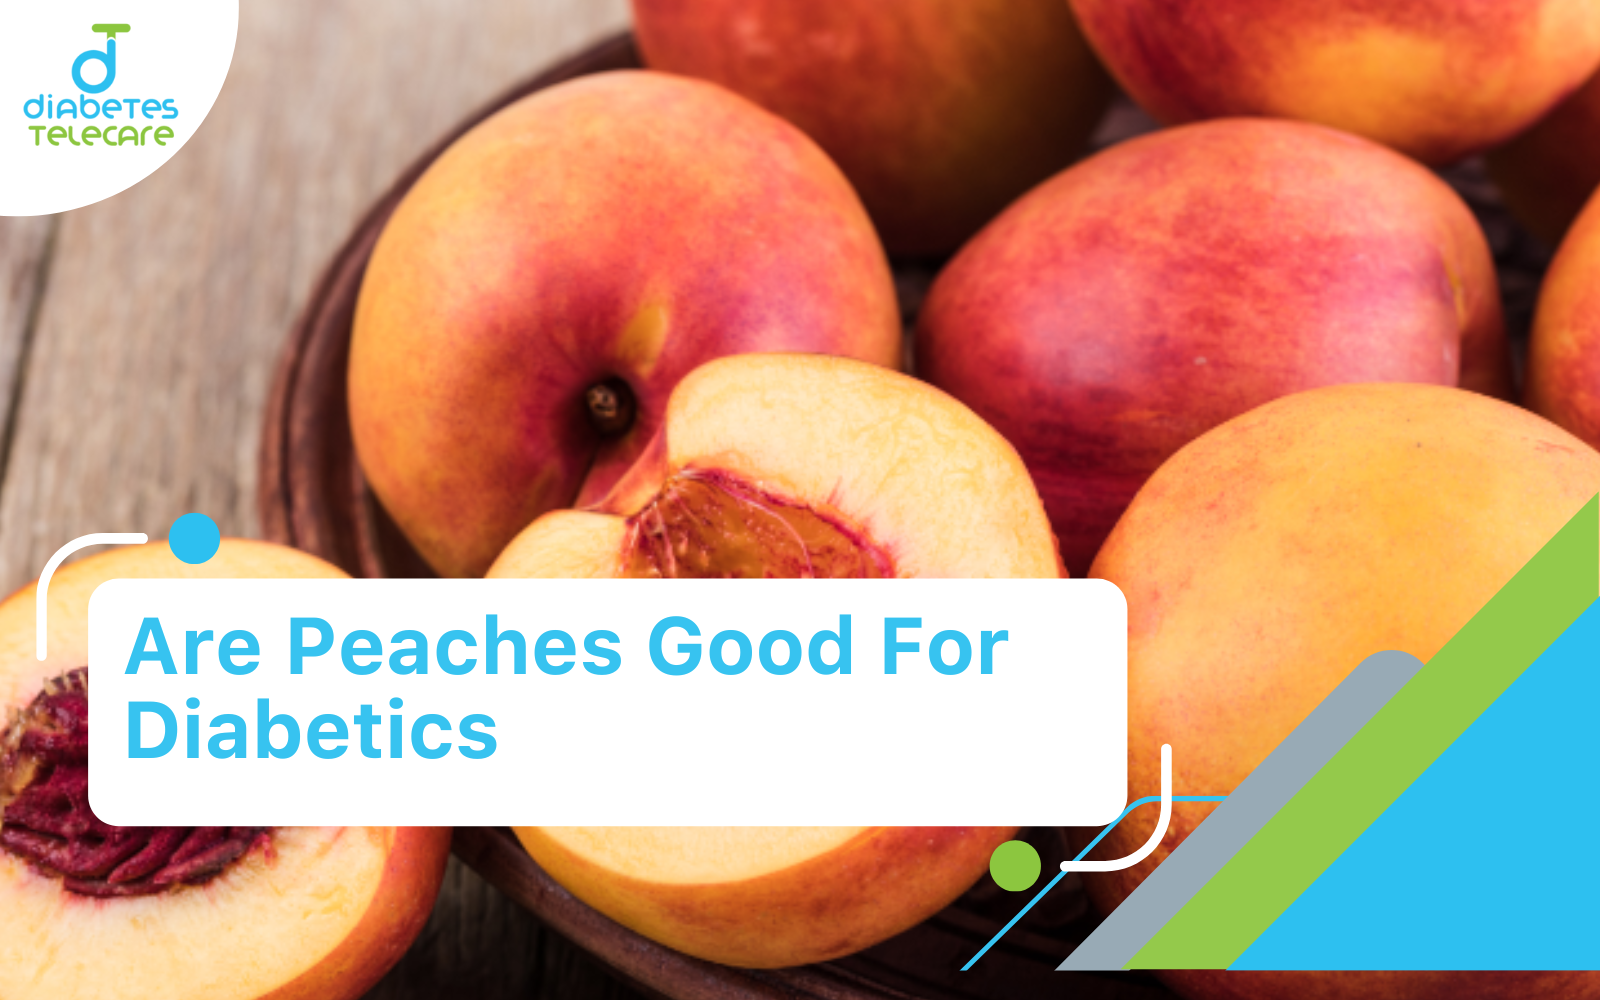 is peach good for diabetes